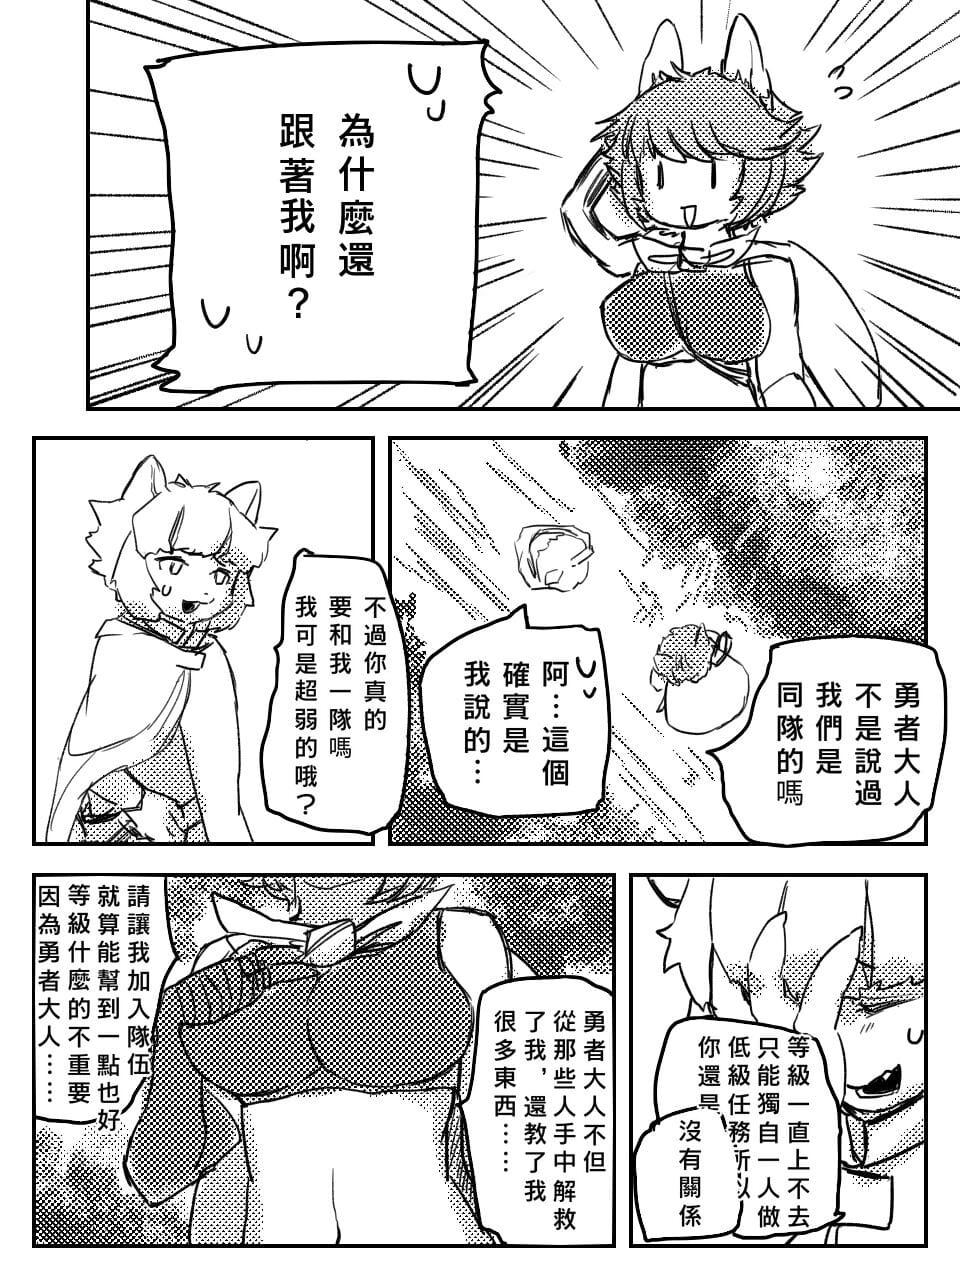 （teammate）勇者和法师露营的小故事 by:鬼流 page 1